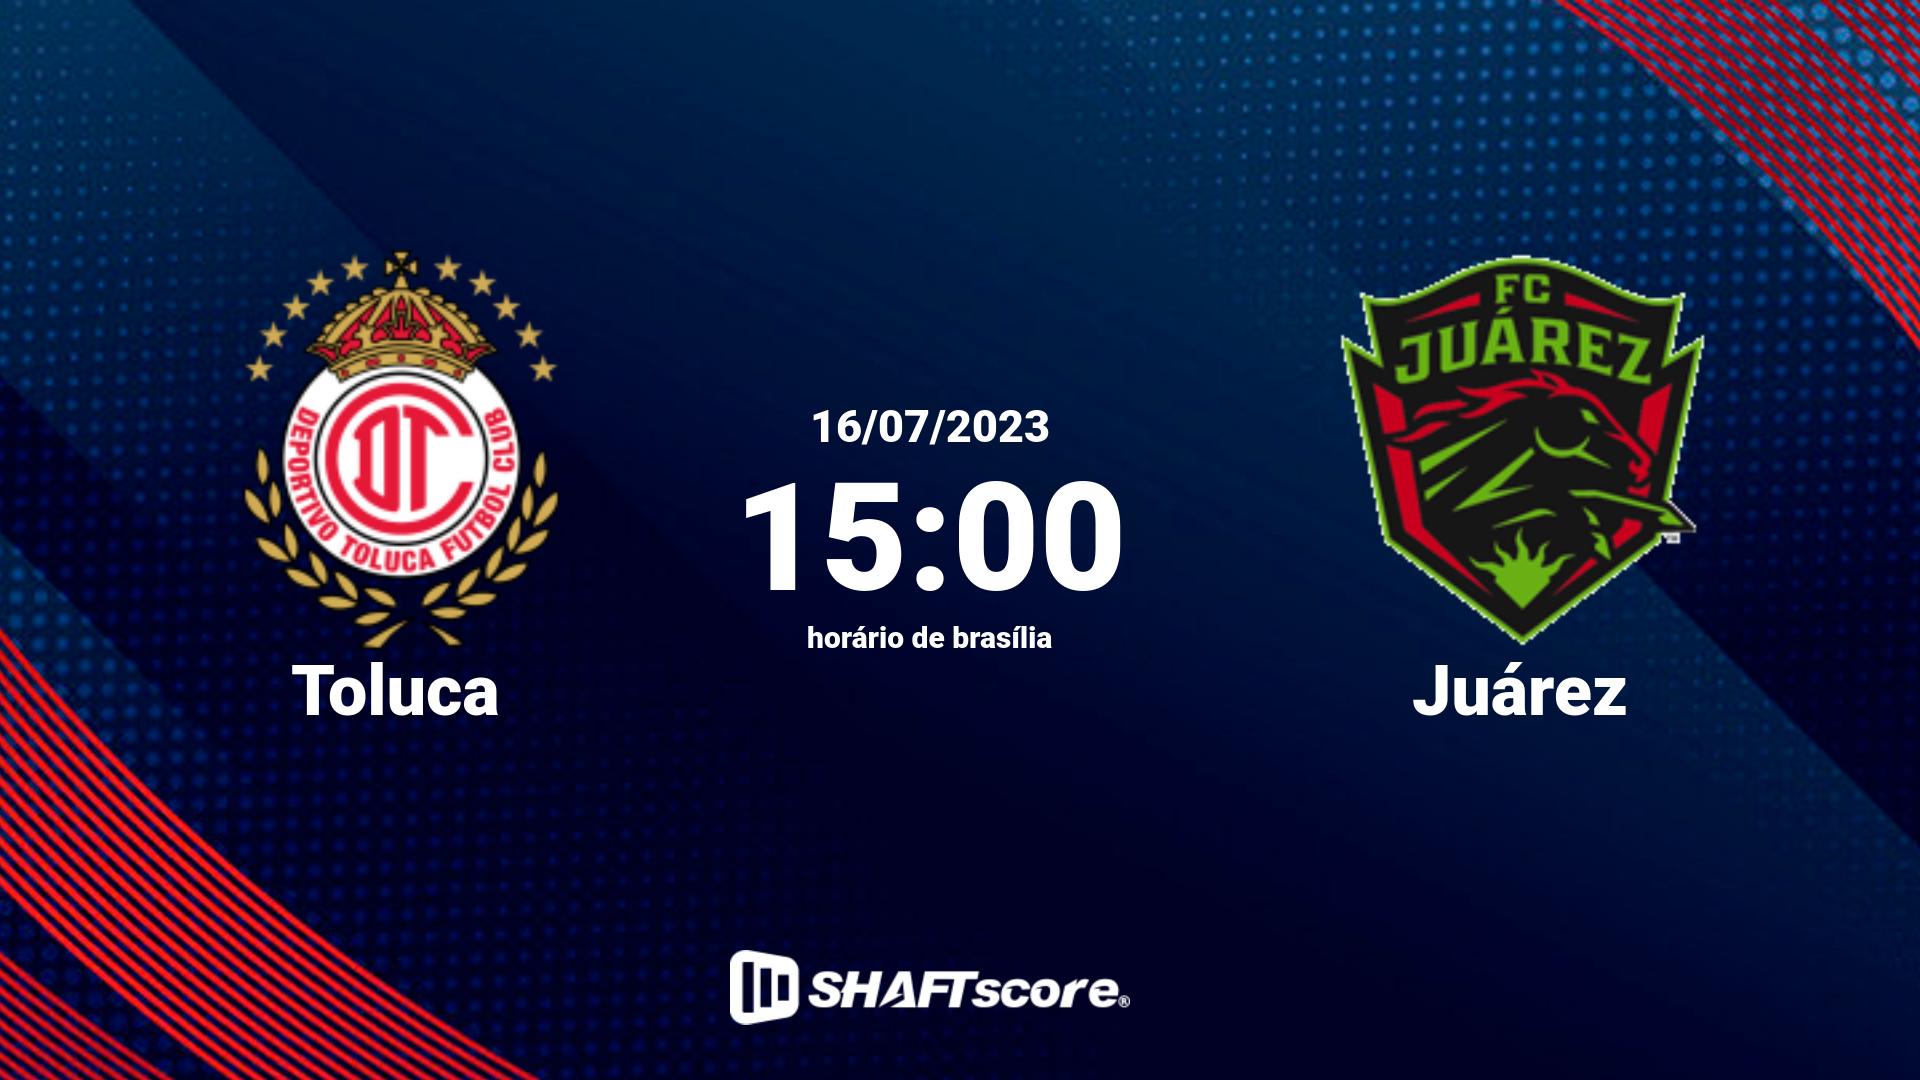 Estatísticas do jogo Toluca vs Juárez 16.07 15:00